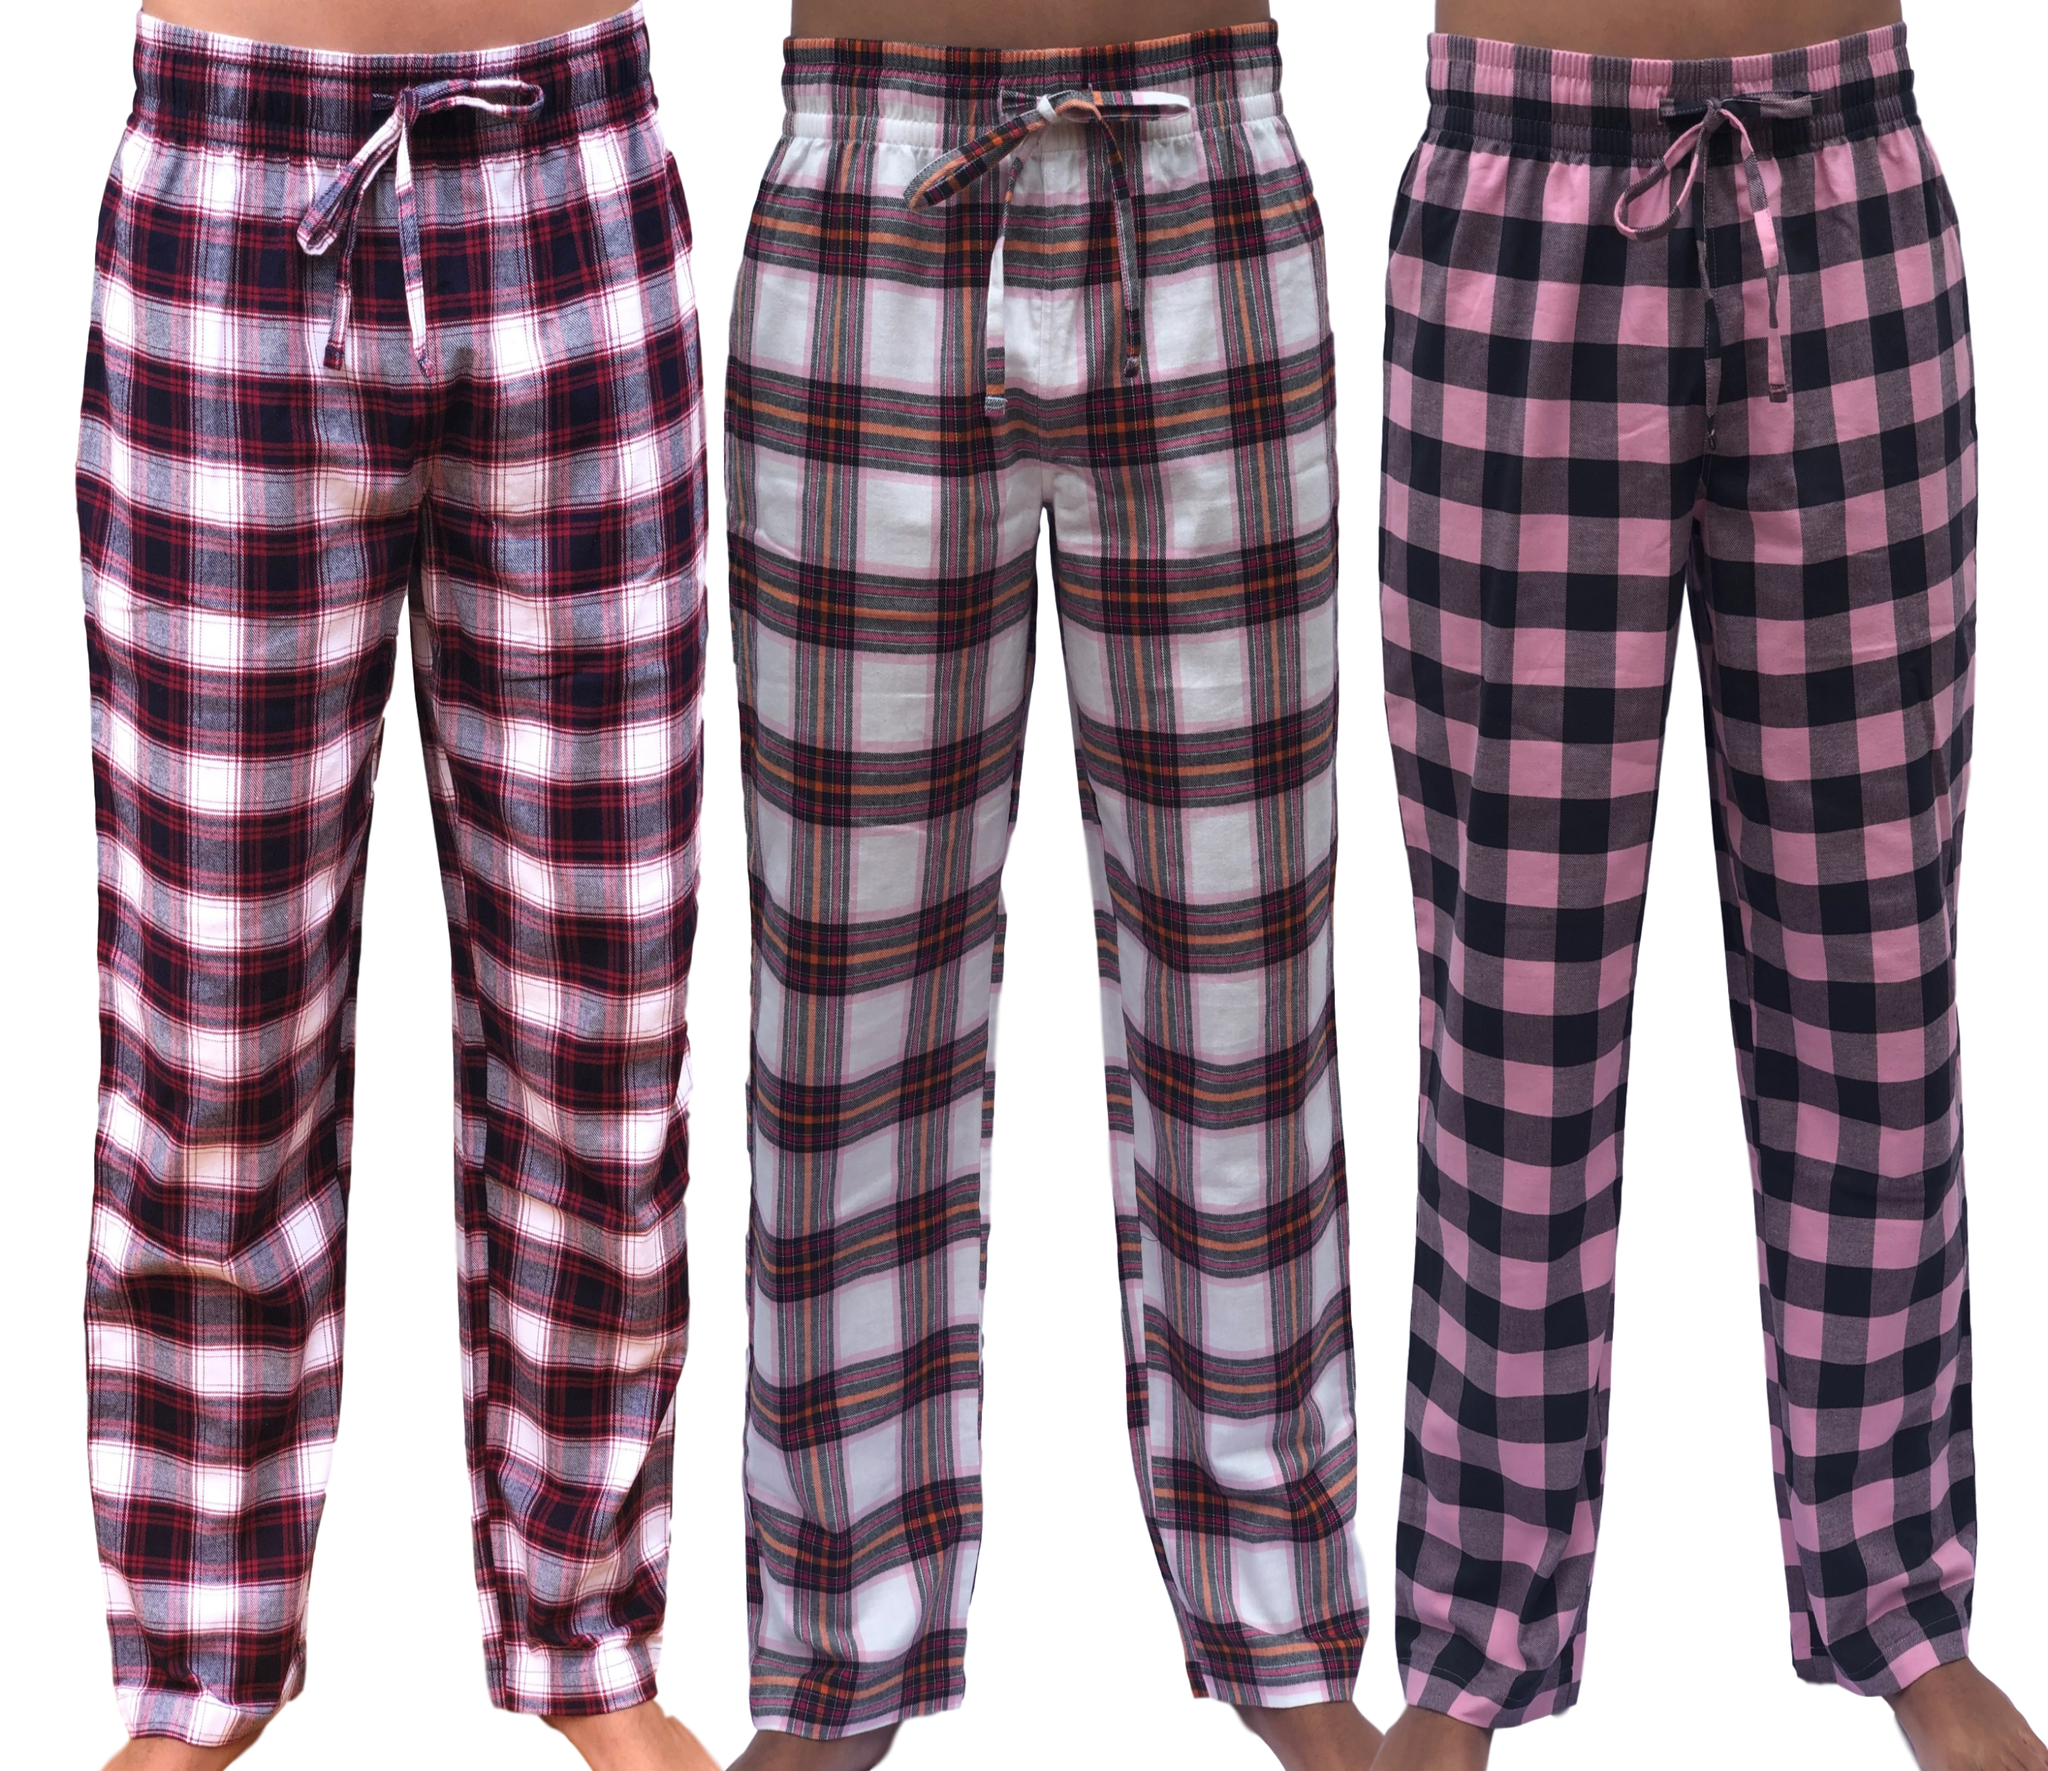 DARESAY 3 Pack: Printed Pajama Pants For Women – Ethiopia